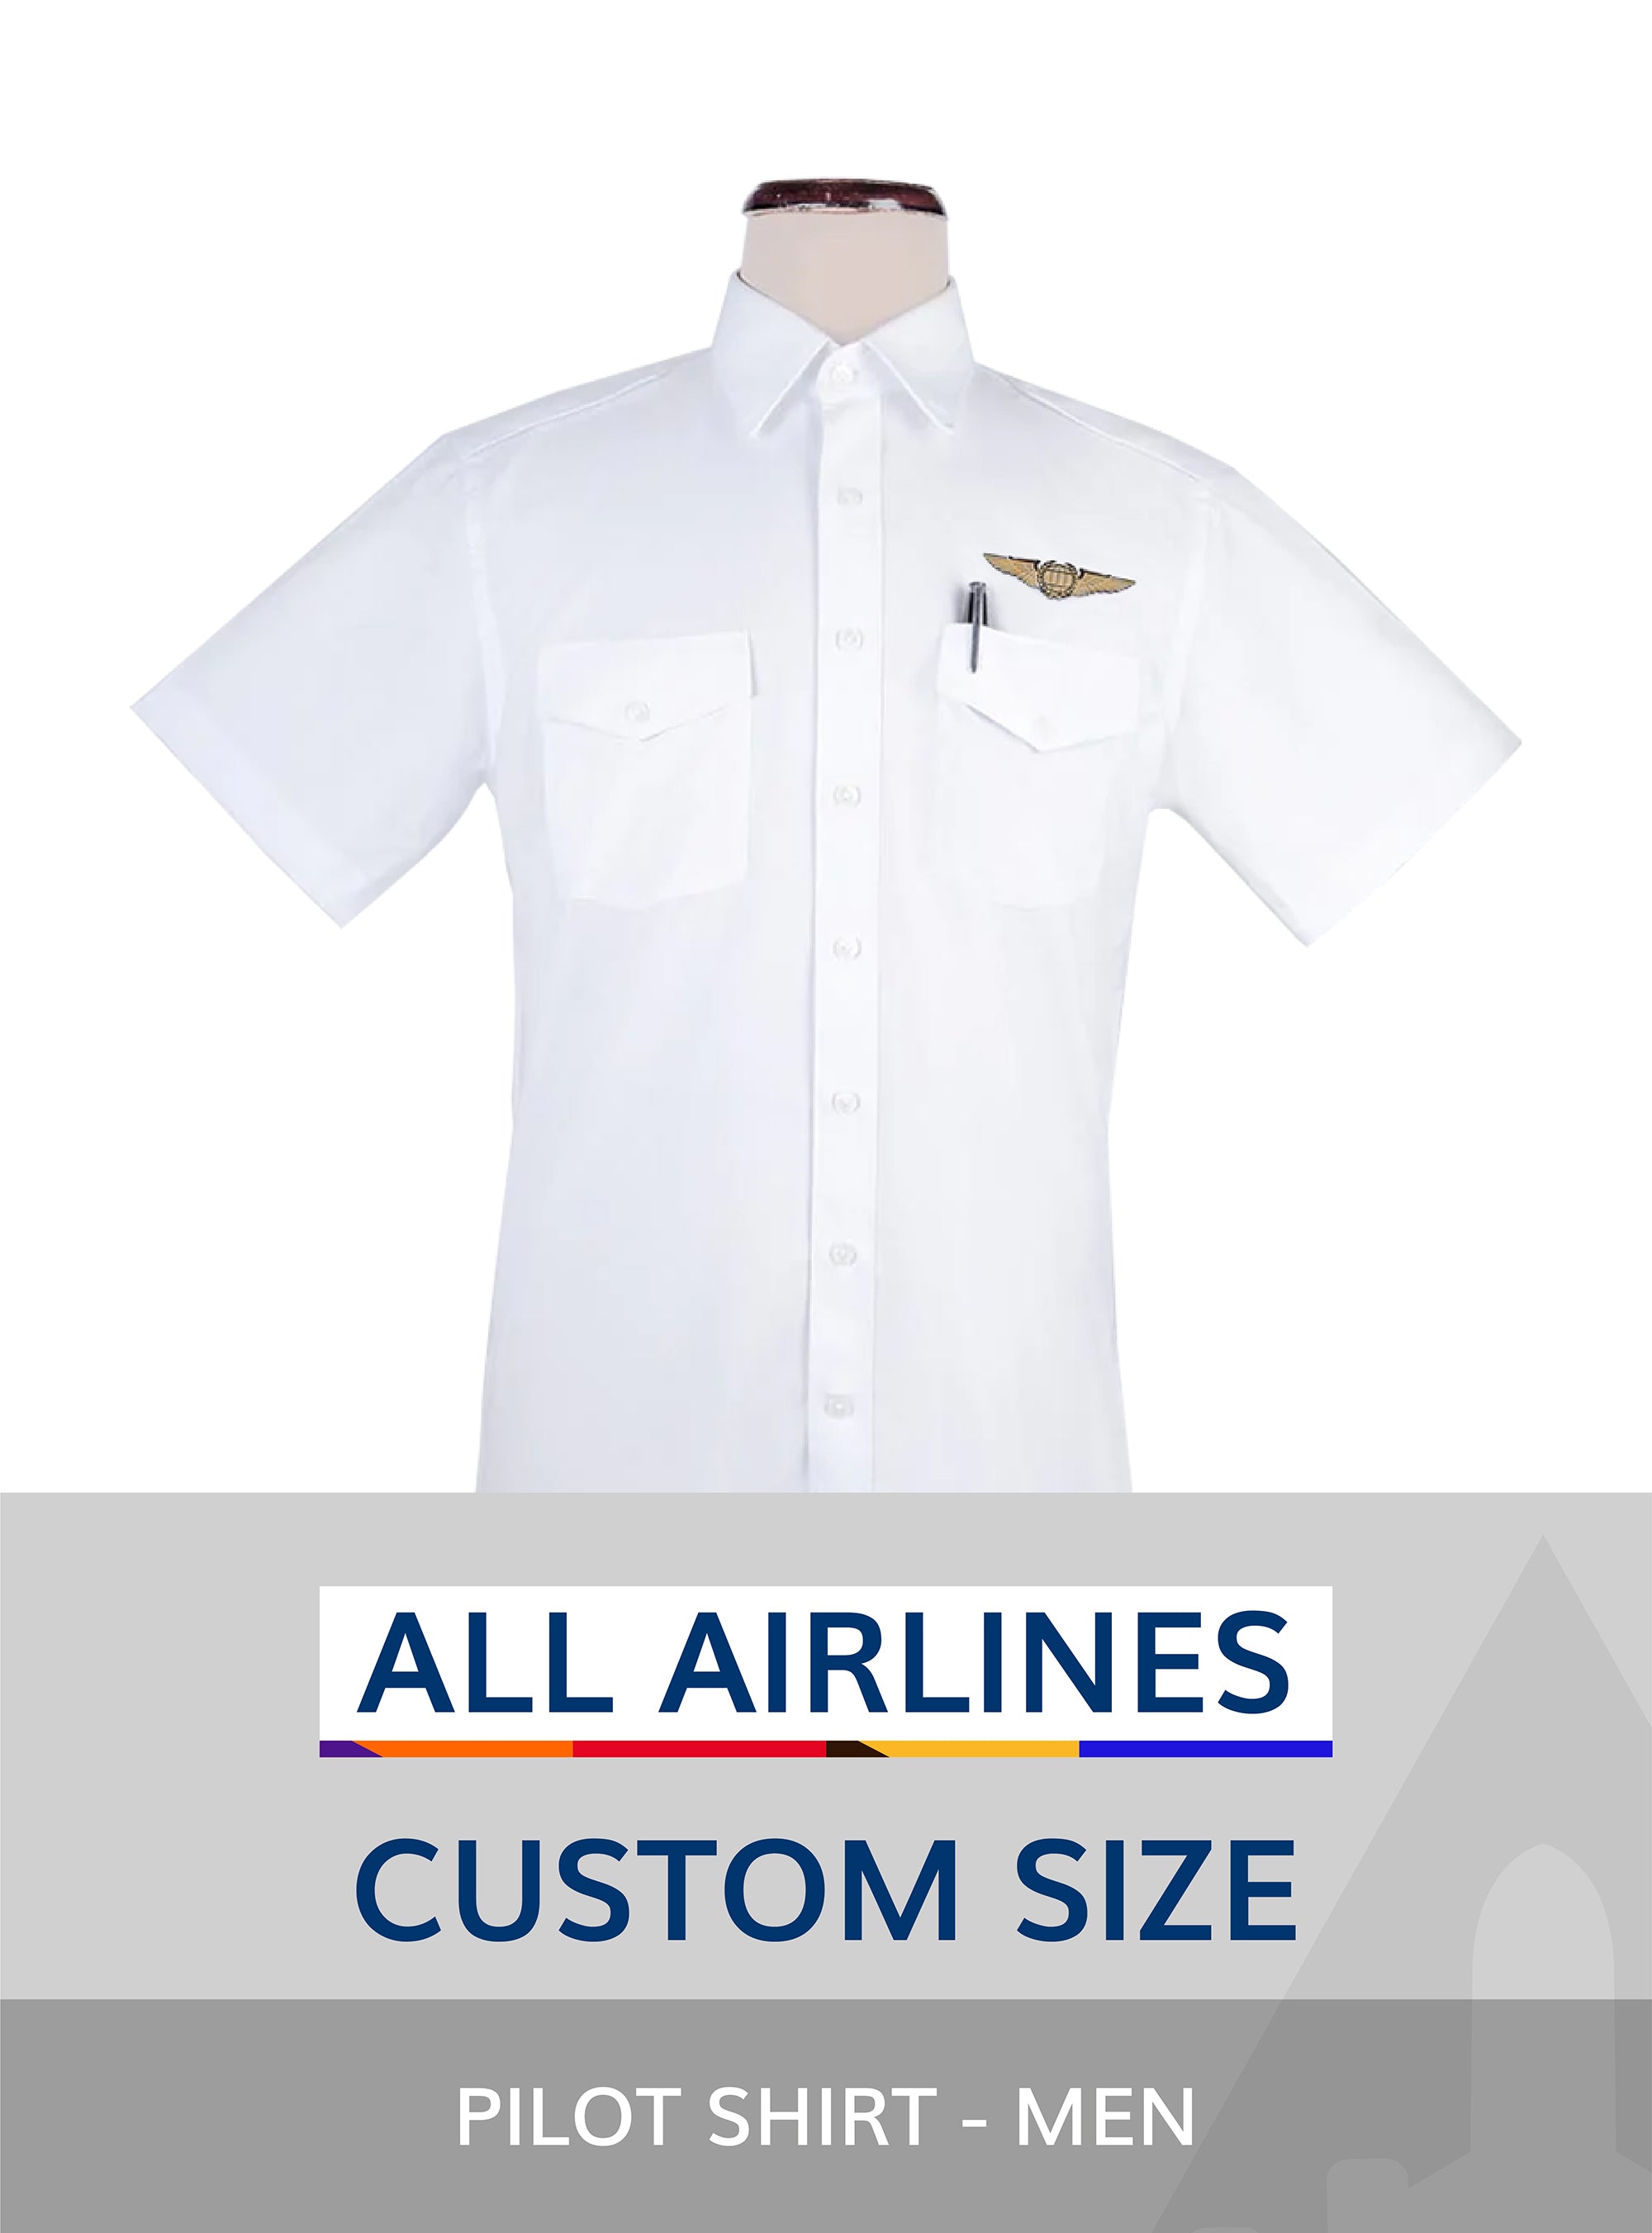 All Airlines custom size pilot shirt for men